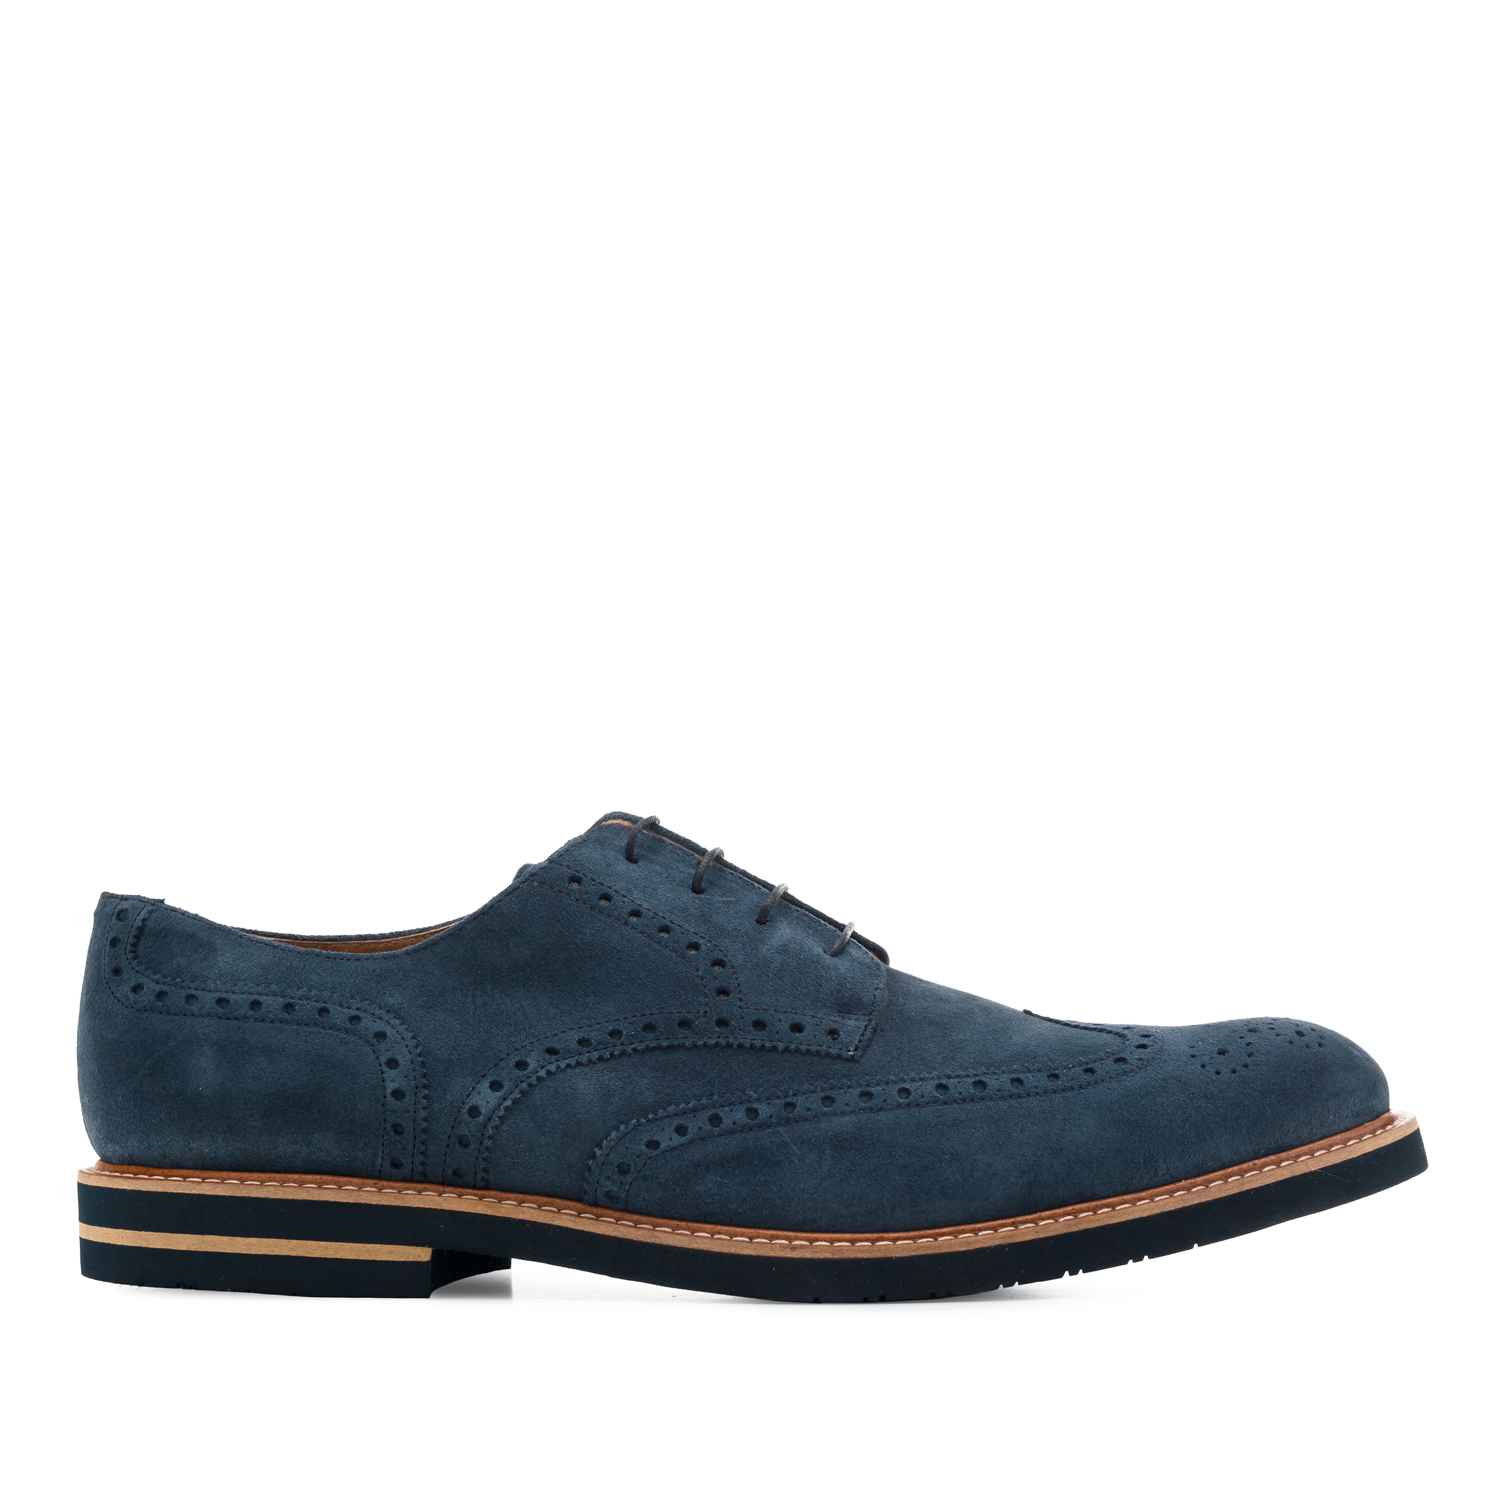 Buty Zamszowe w stylu Oxford Niebieskie 